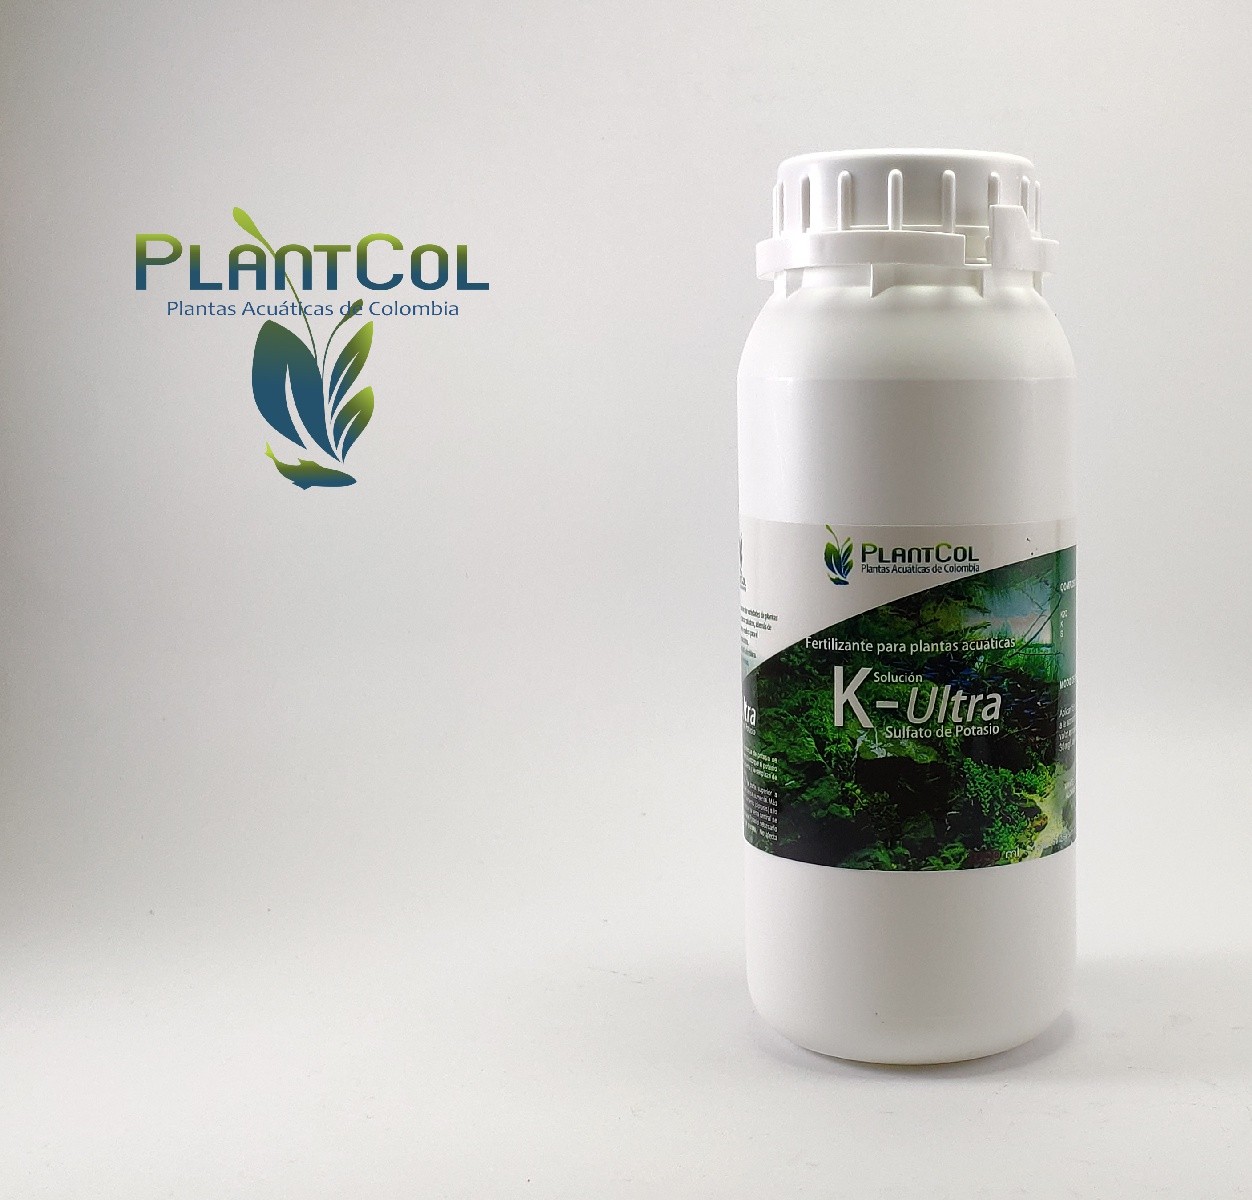 Samuel cavidad Receptor 500 ml Potasio / Sulfato de Potasio Fertilizante para plantas de acuario